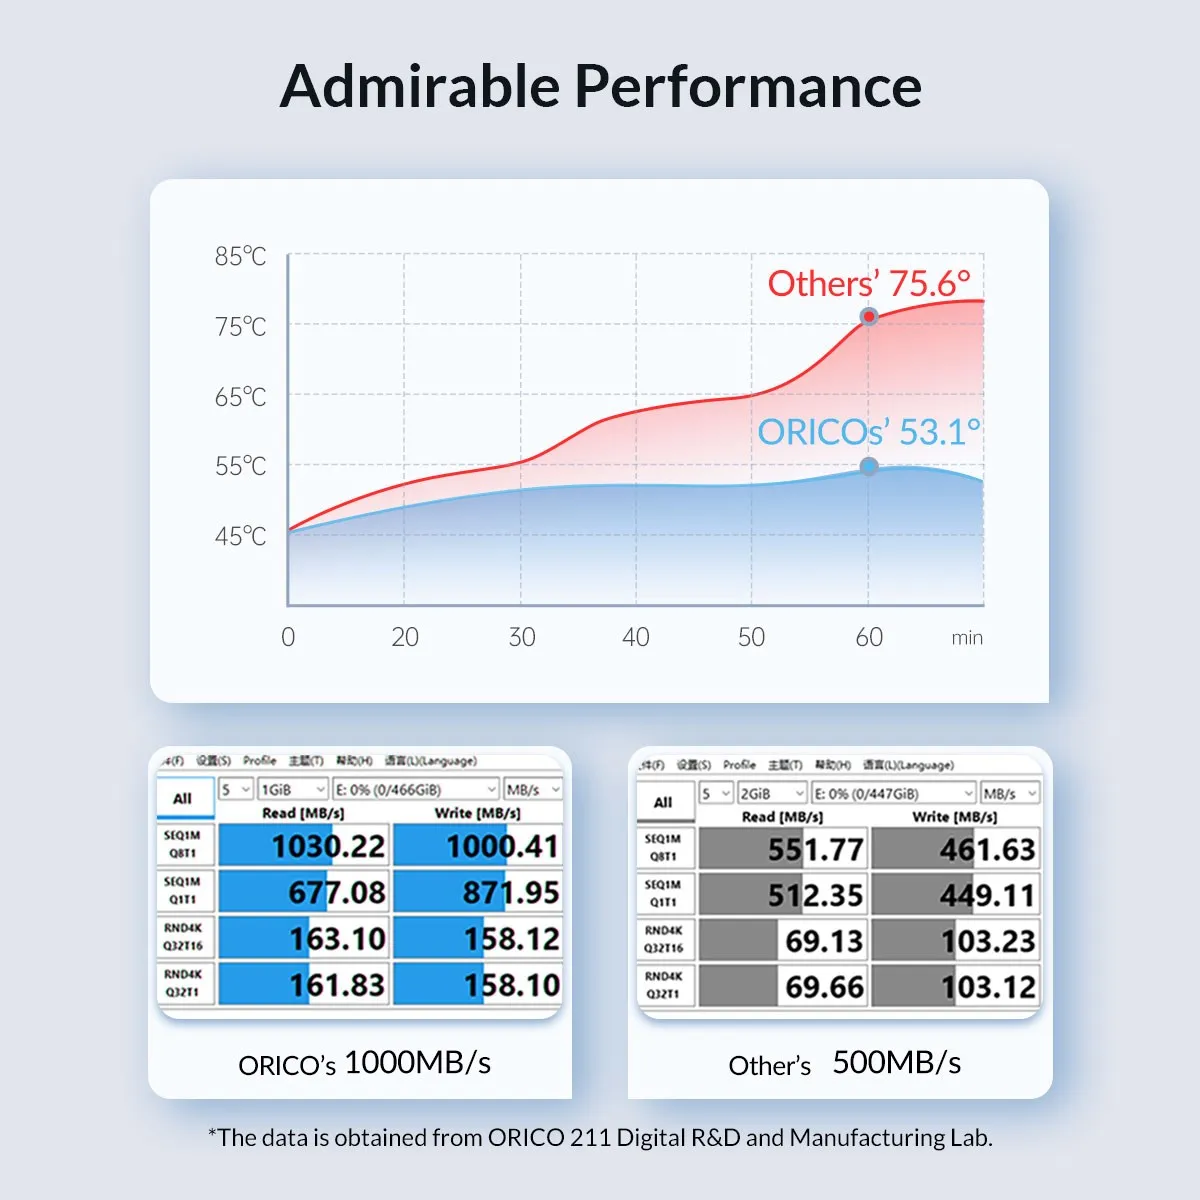 ORICO-업그레이드 된 모든 알루미늄 합금 M.2 NVMe SSD 인클로저, 10Gbps PCIe M2 SSD 케이스 NVMe M 키 솔리드 스테이트 드라이브 케이스 (케이블 포함)